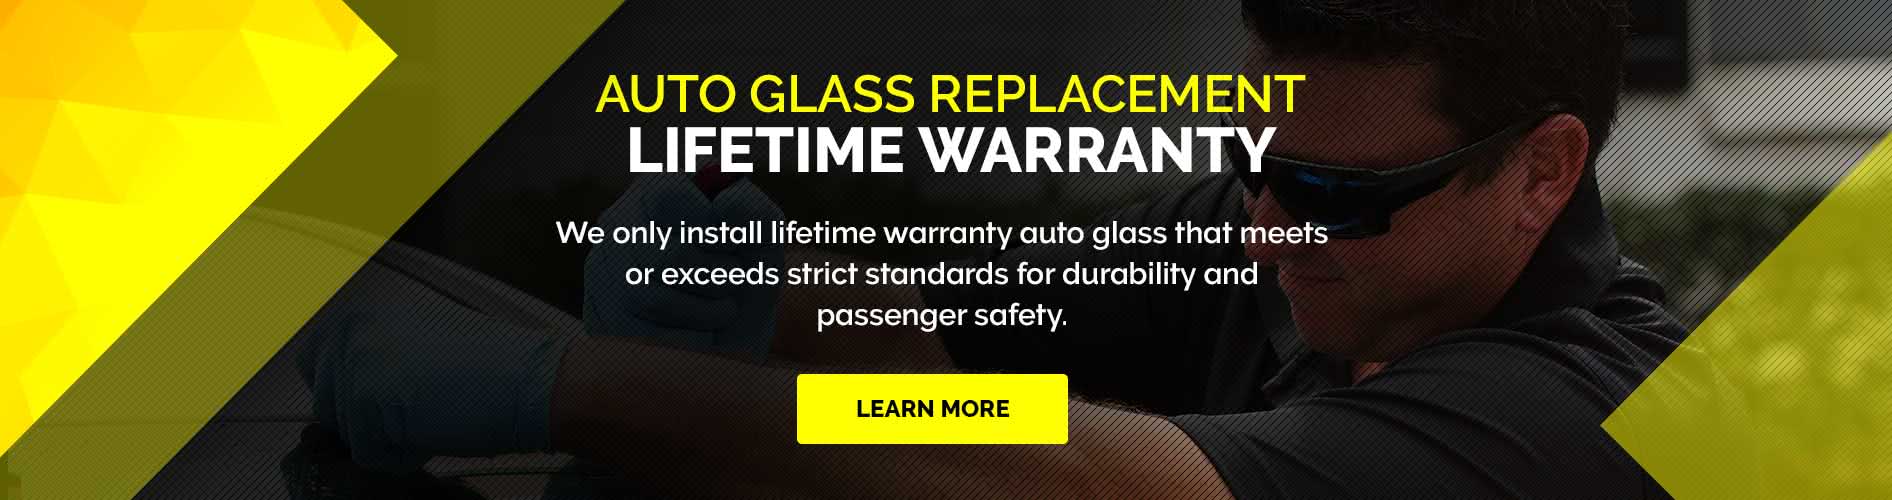 Mr Auto Glass Premier Auto Glass Lifetime Warranty